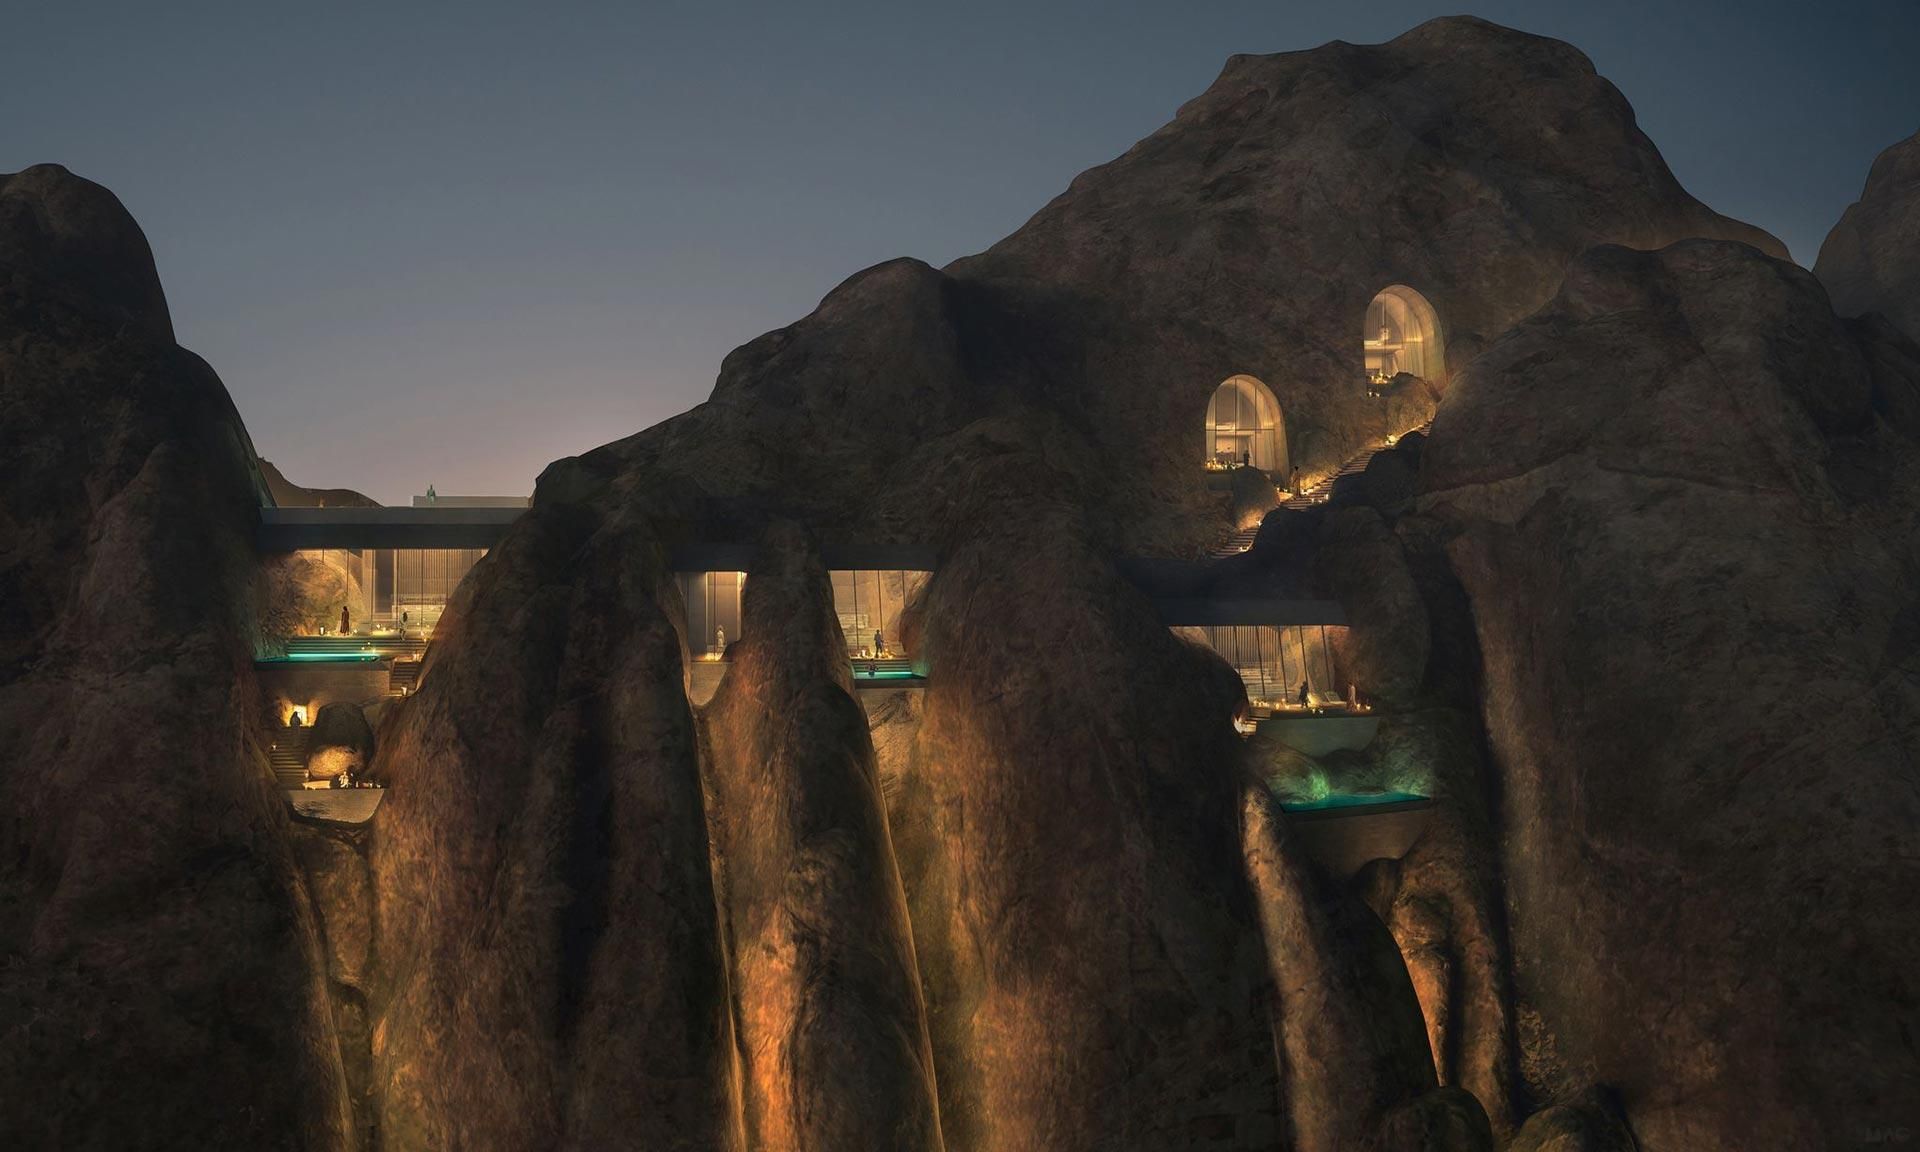 Встроенный в скалу: как будет выглядеть удивительный курорт среди пустыни Саудовской Аравии - Дизайн 24